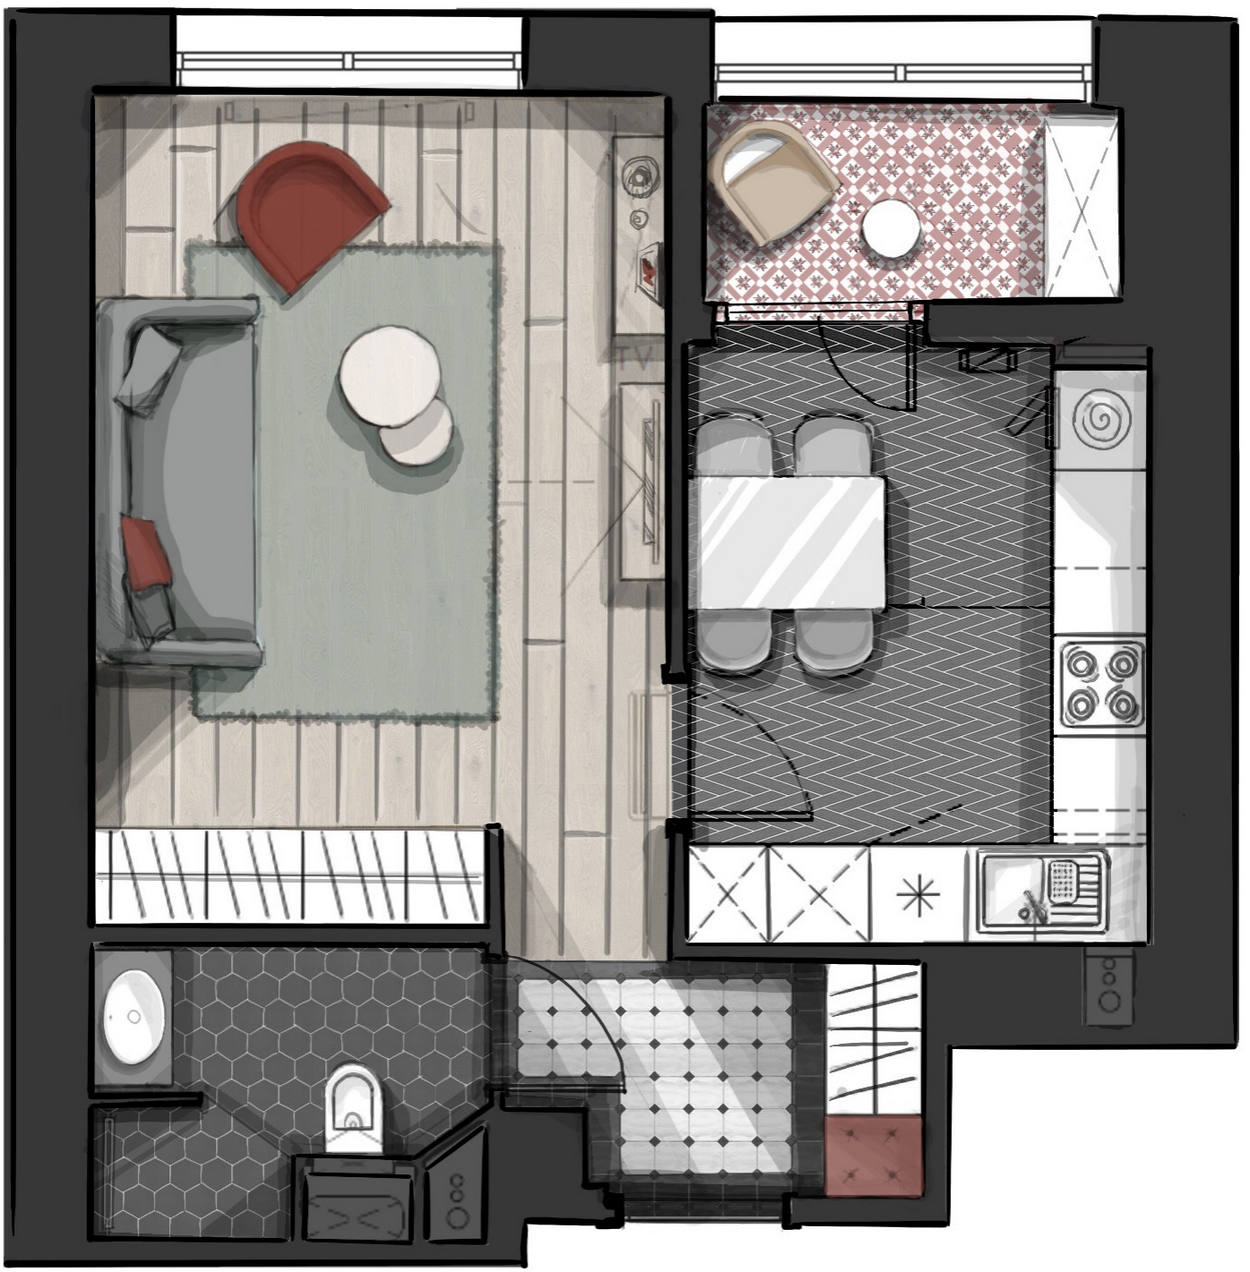 Sơ đồ bố trí căn hộ 35m²  do nhà thiết kế nội thất Anna Katerinich cung cấp.